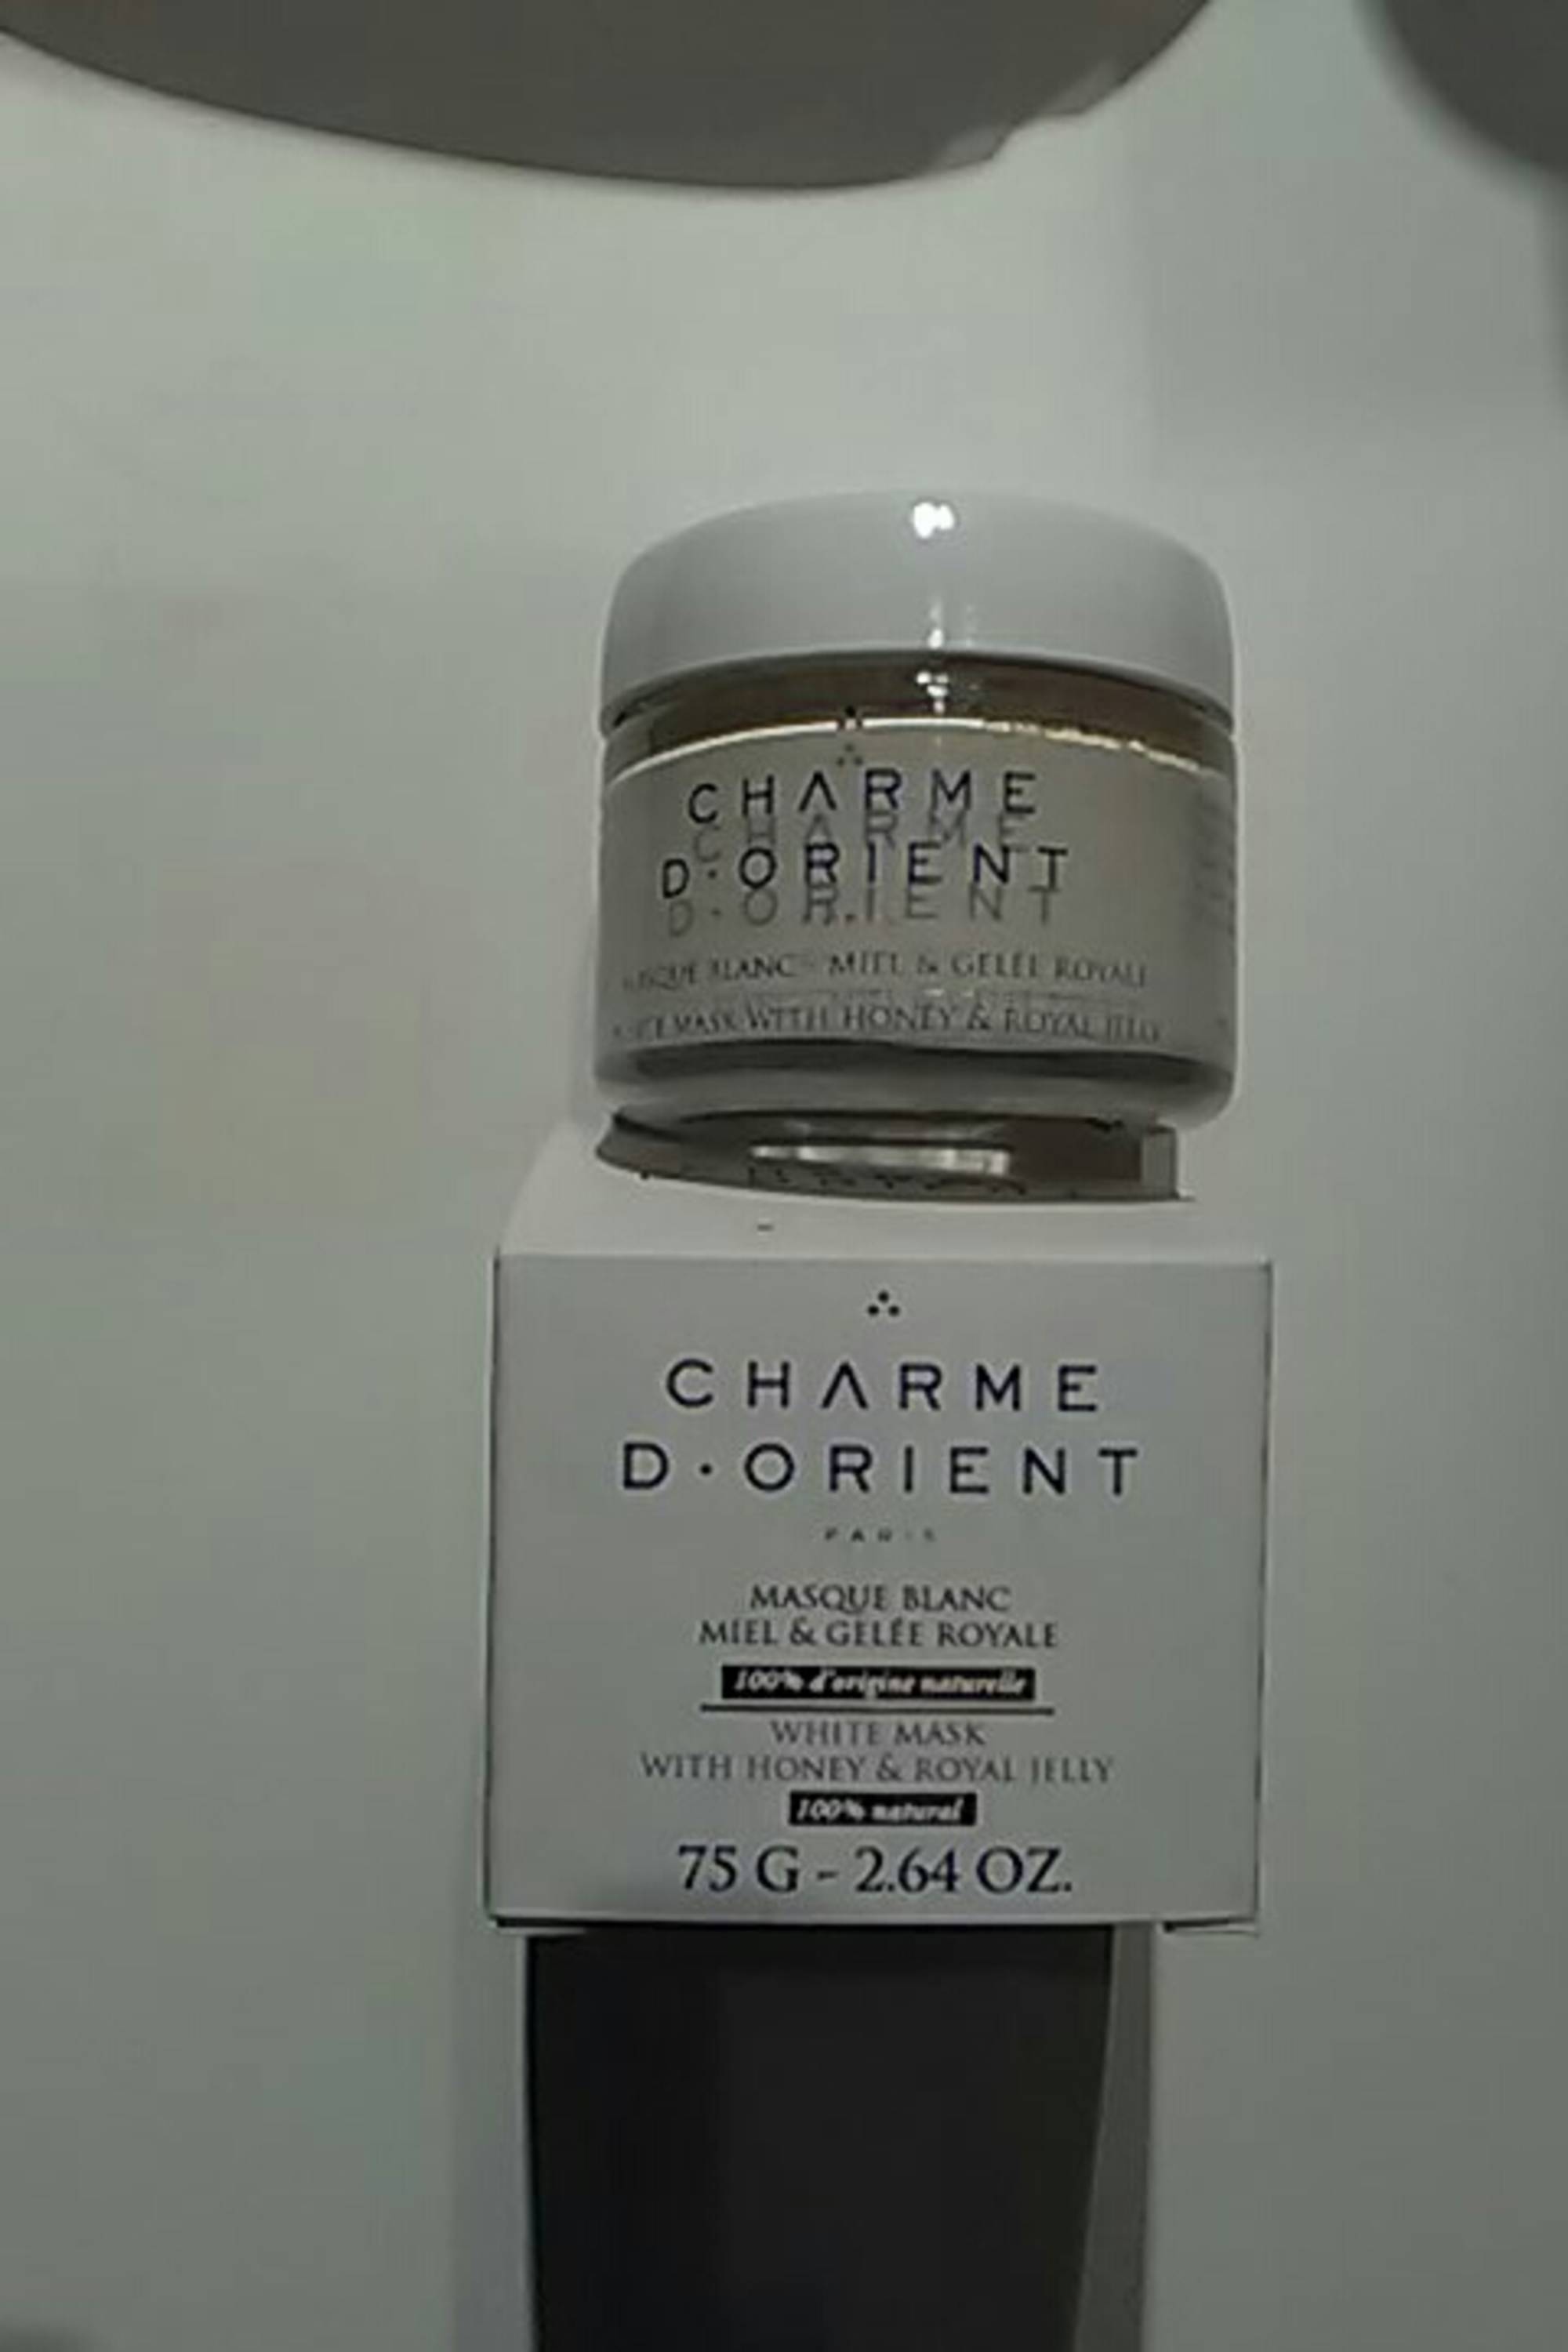 CHARME D'ORIENT - Miel & Gelée royale - Masque blanc